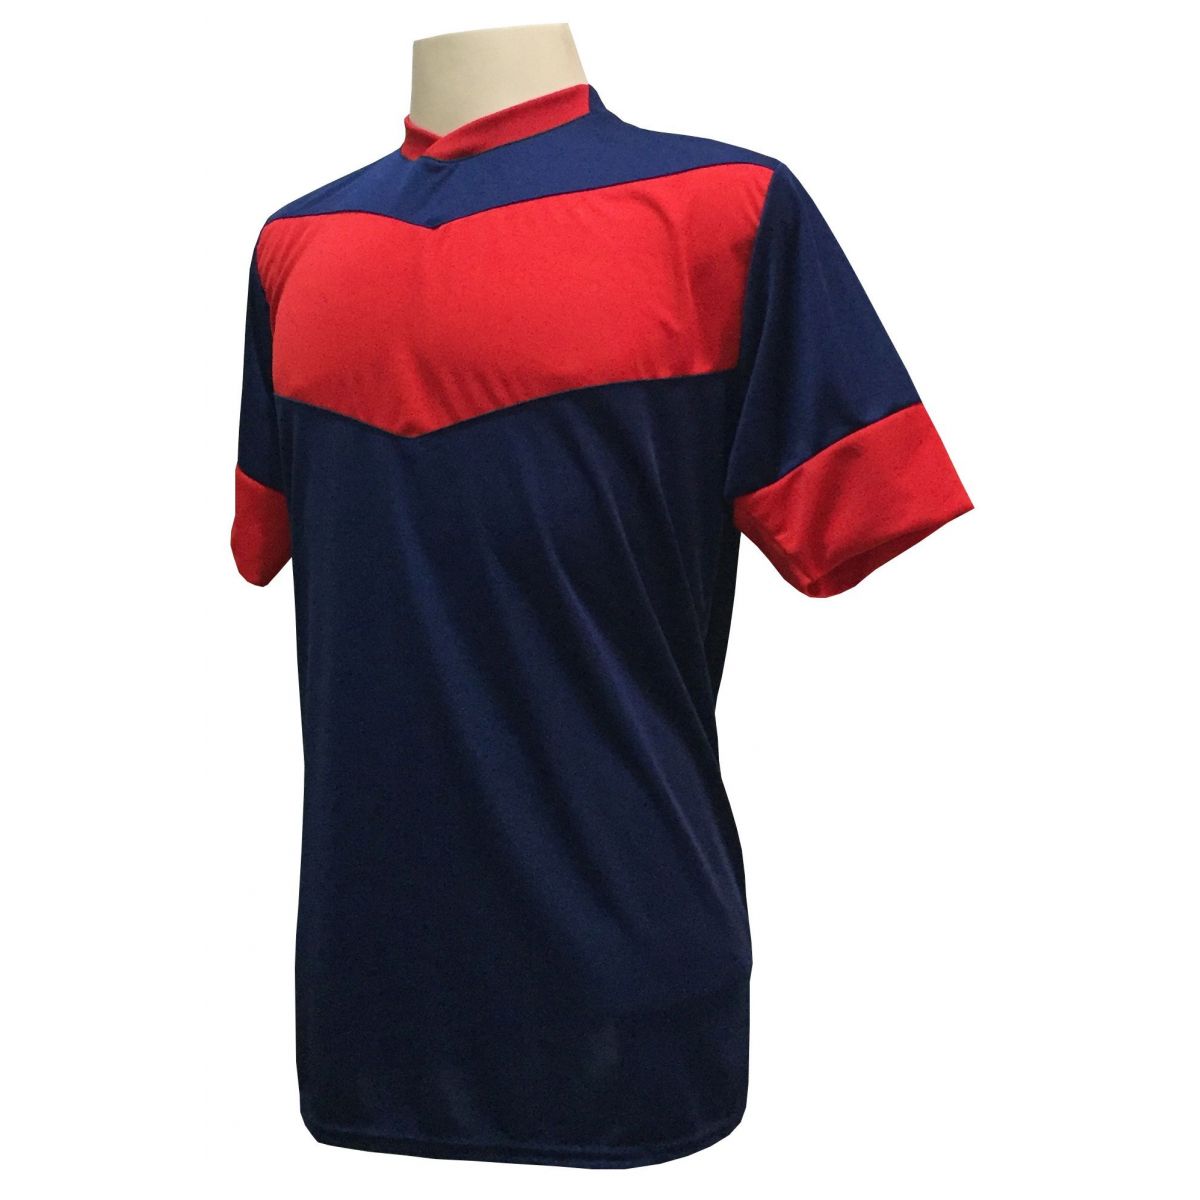 Uniforme Esportivo com 18 camisas modelo Columbus Marinho/Vermelho + 18 calções modelo Madrid Vermelho + Brindes